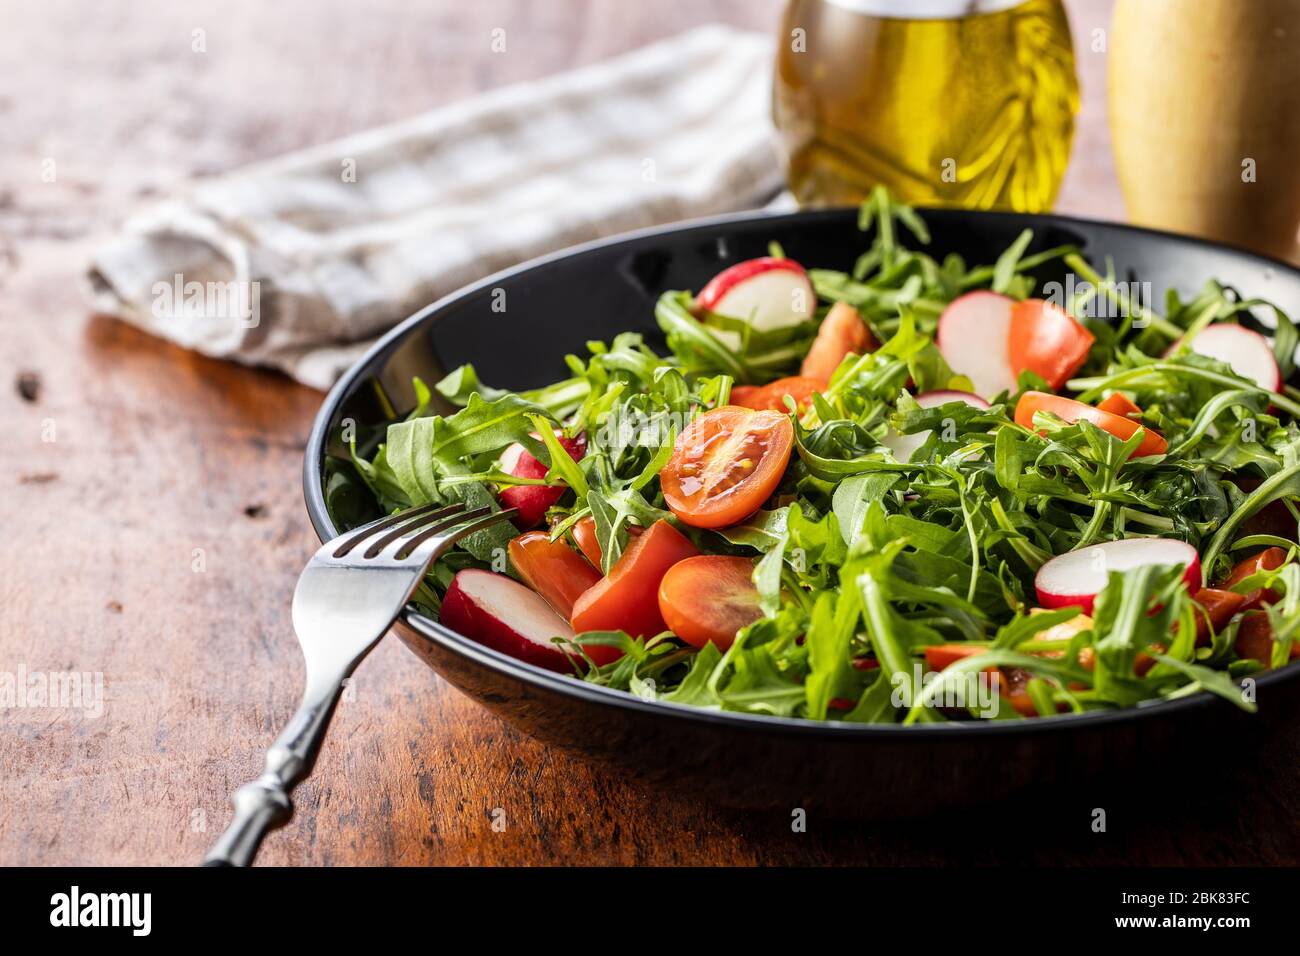 Insalata di rucola fresca con ravanelli, pomodori e peperoni rossi sul piatto. Foto Stock